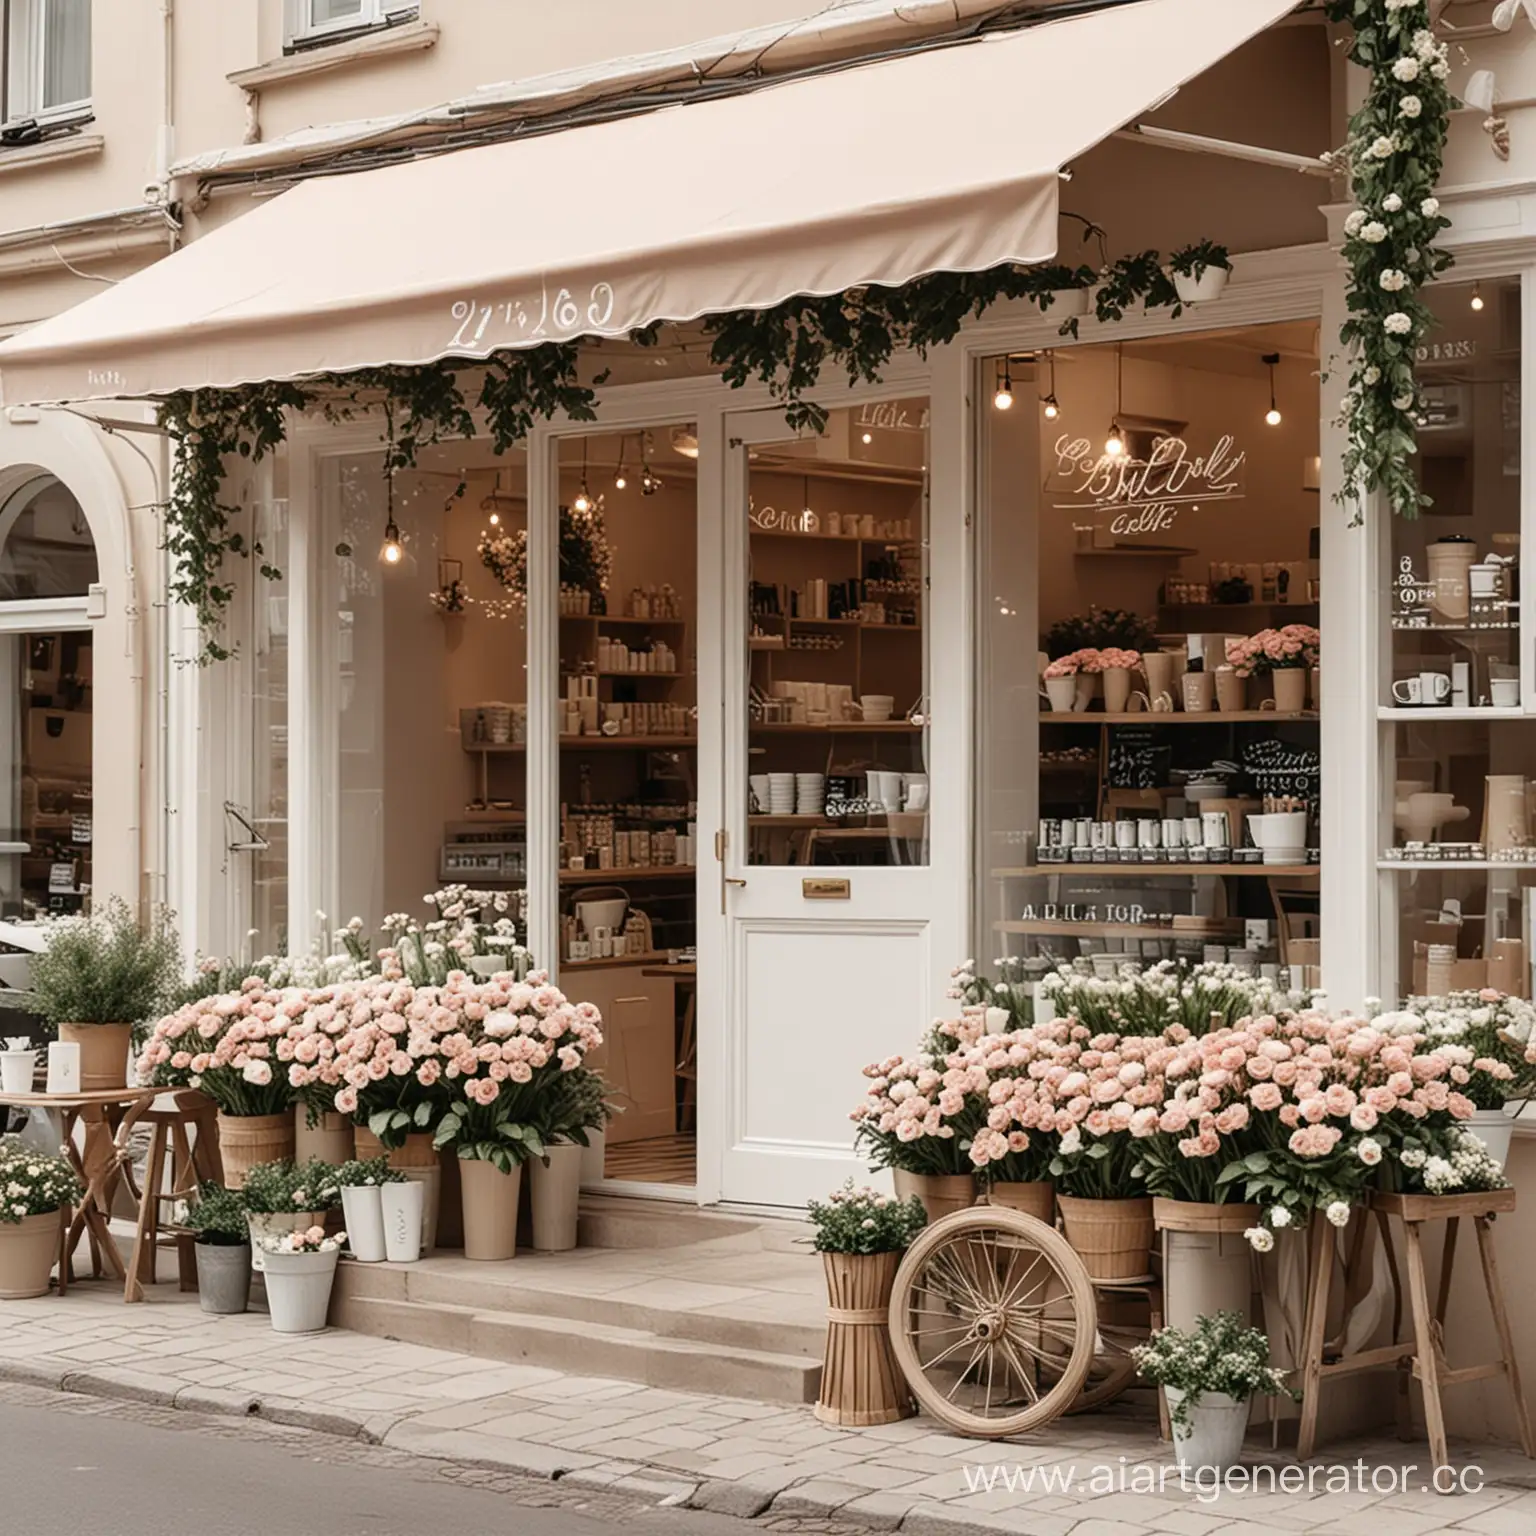 кофейня-цветочный магазин в светлых тонах